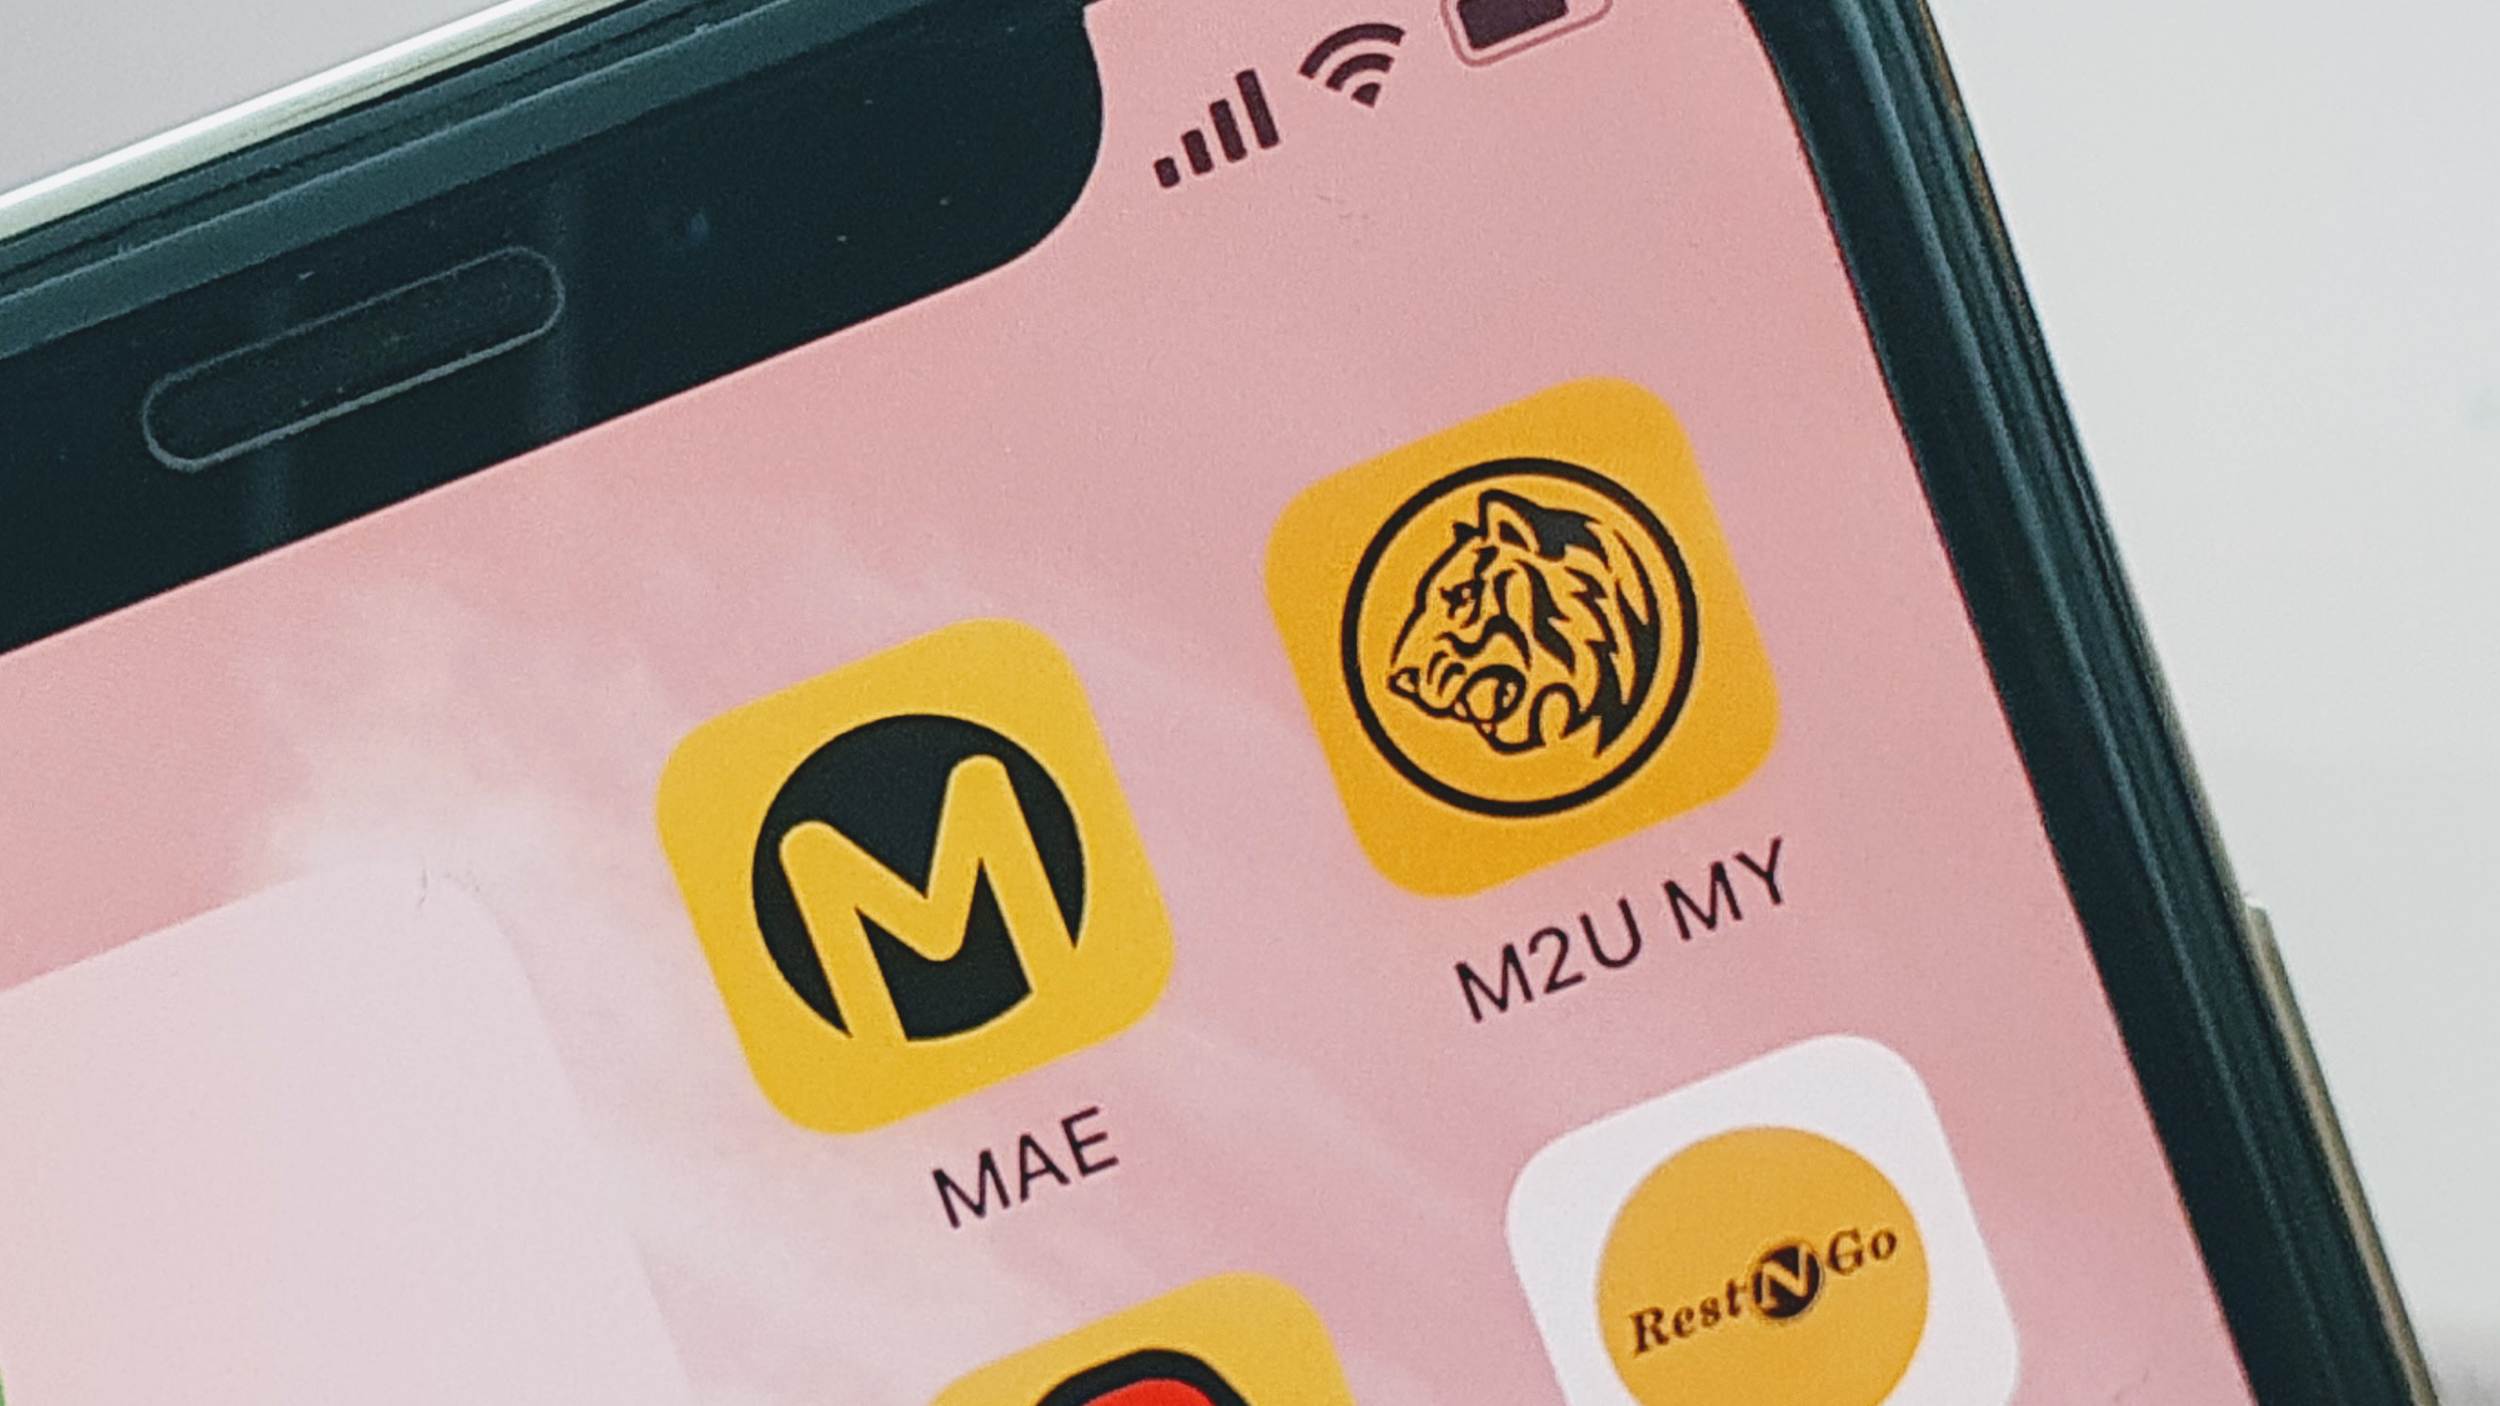 Aplikasi Maybank M2U MY Dan MAE Menghadapi Masalah Untuk Diakses – Versi Web Masih Boleh Digunakan